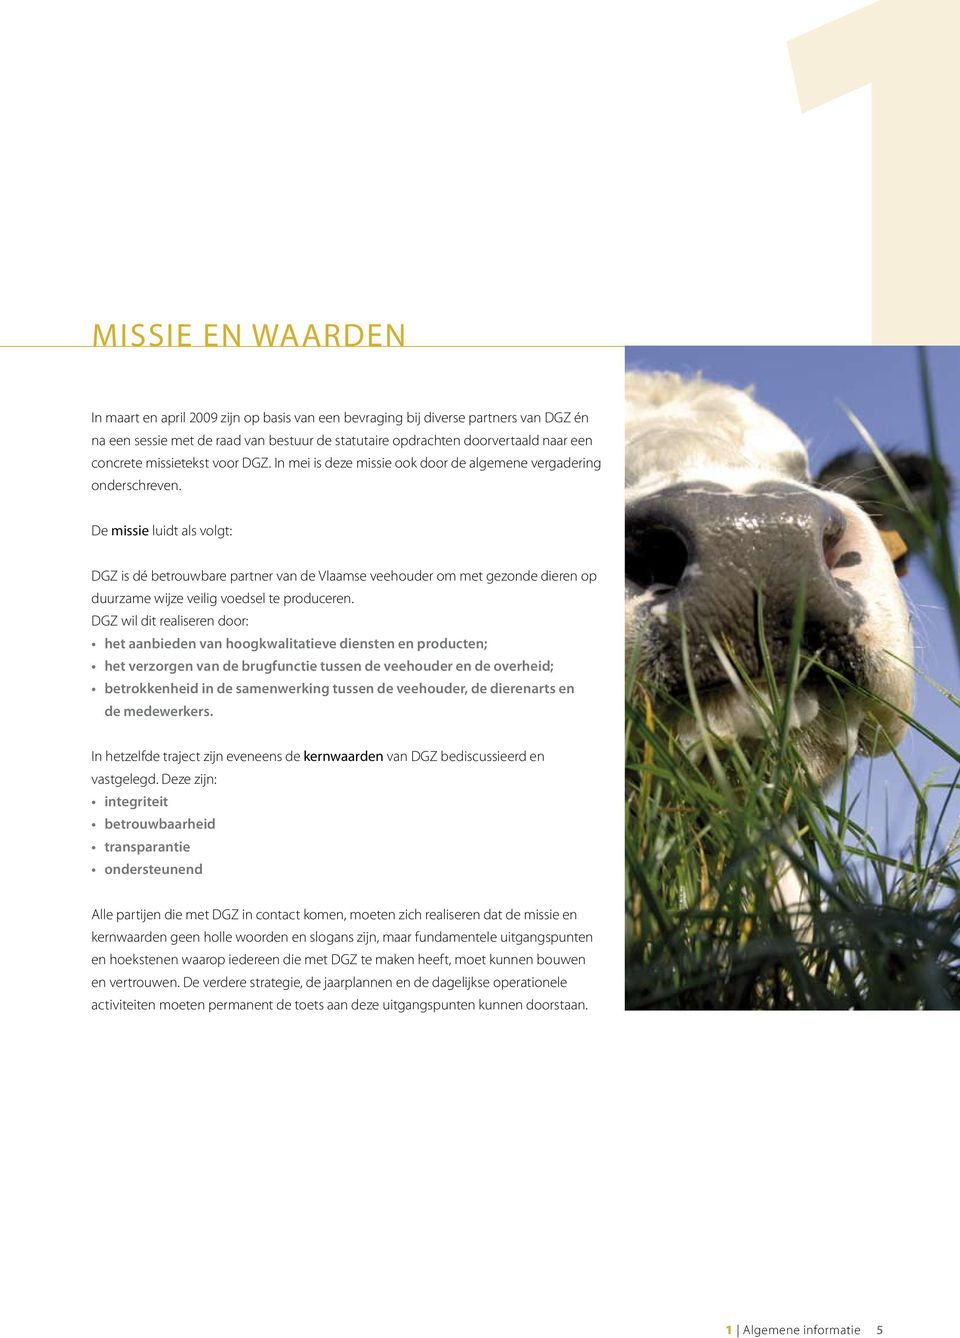 De missie luidt als volgt: DGZ is dé betrouwbare partner van de Vlaamse veehouder om met gezonde dieren op duurzame wijze veilig voedsel te produceren.